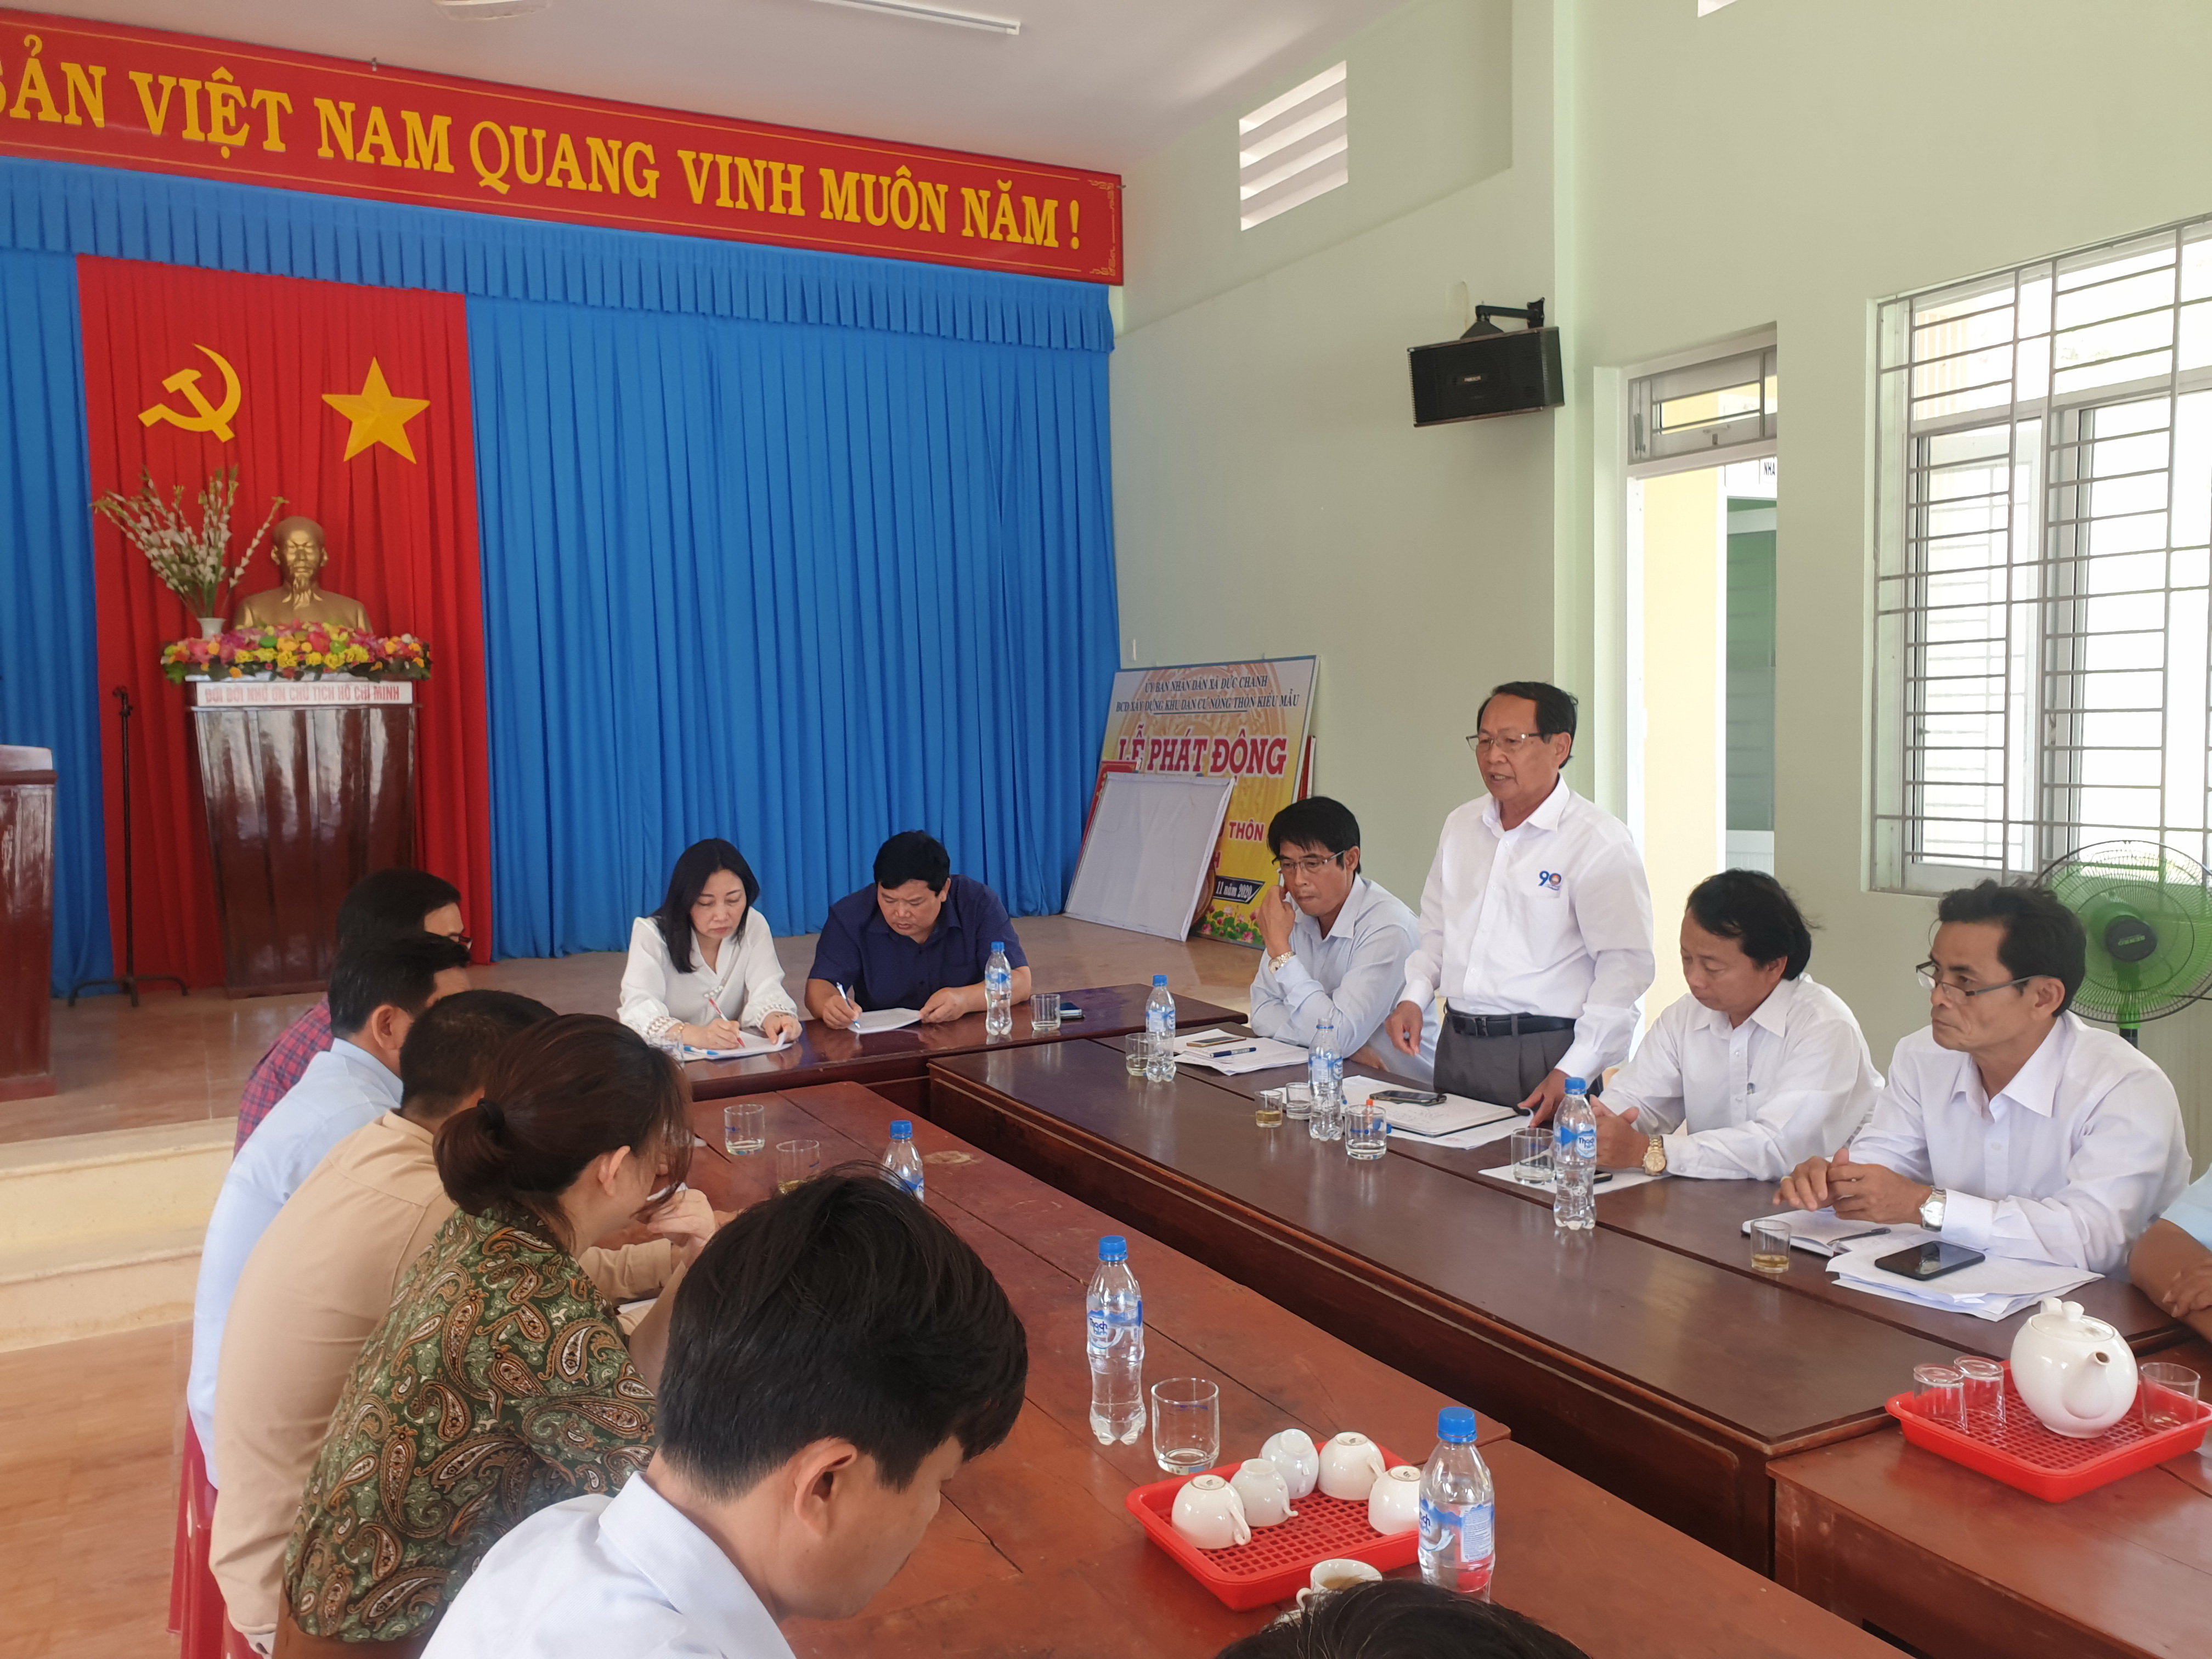 Đoàn công tác Uỷ ban Trung ương Mặt trận tổ quốc Việt Nam kiểm tra công tác hỗ trợ nhân dân khắc phục thiệt hại do mưa lũ gây ra năm 2020 và thực hiện dự án giảm nghèo trên địa bàn huyện Mộ Đức